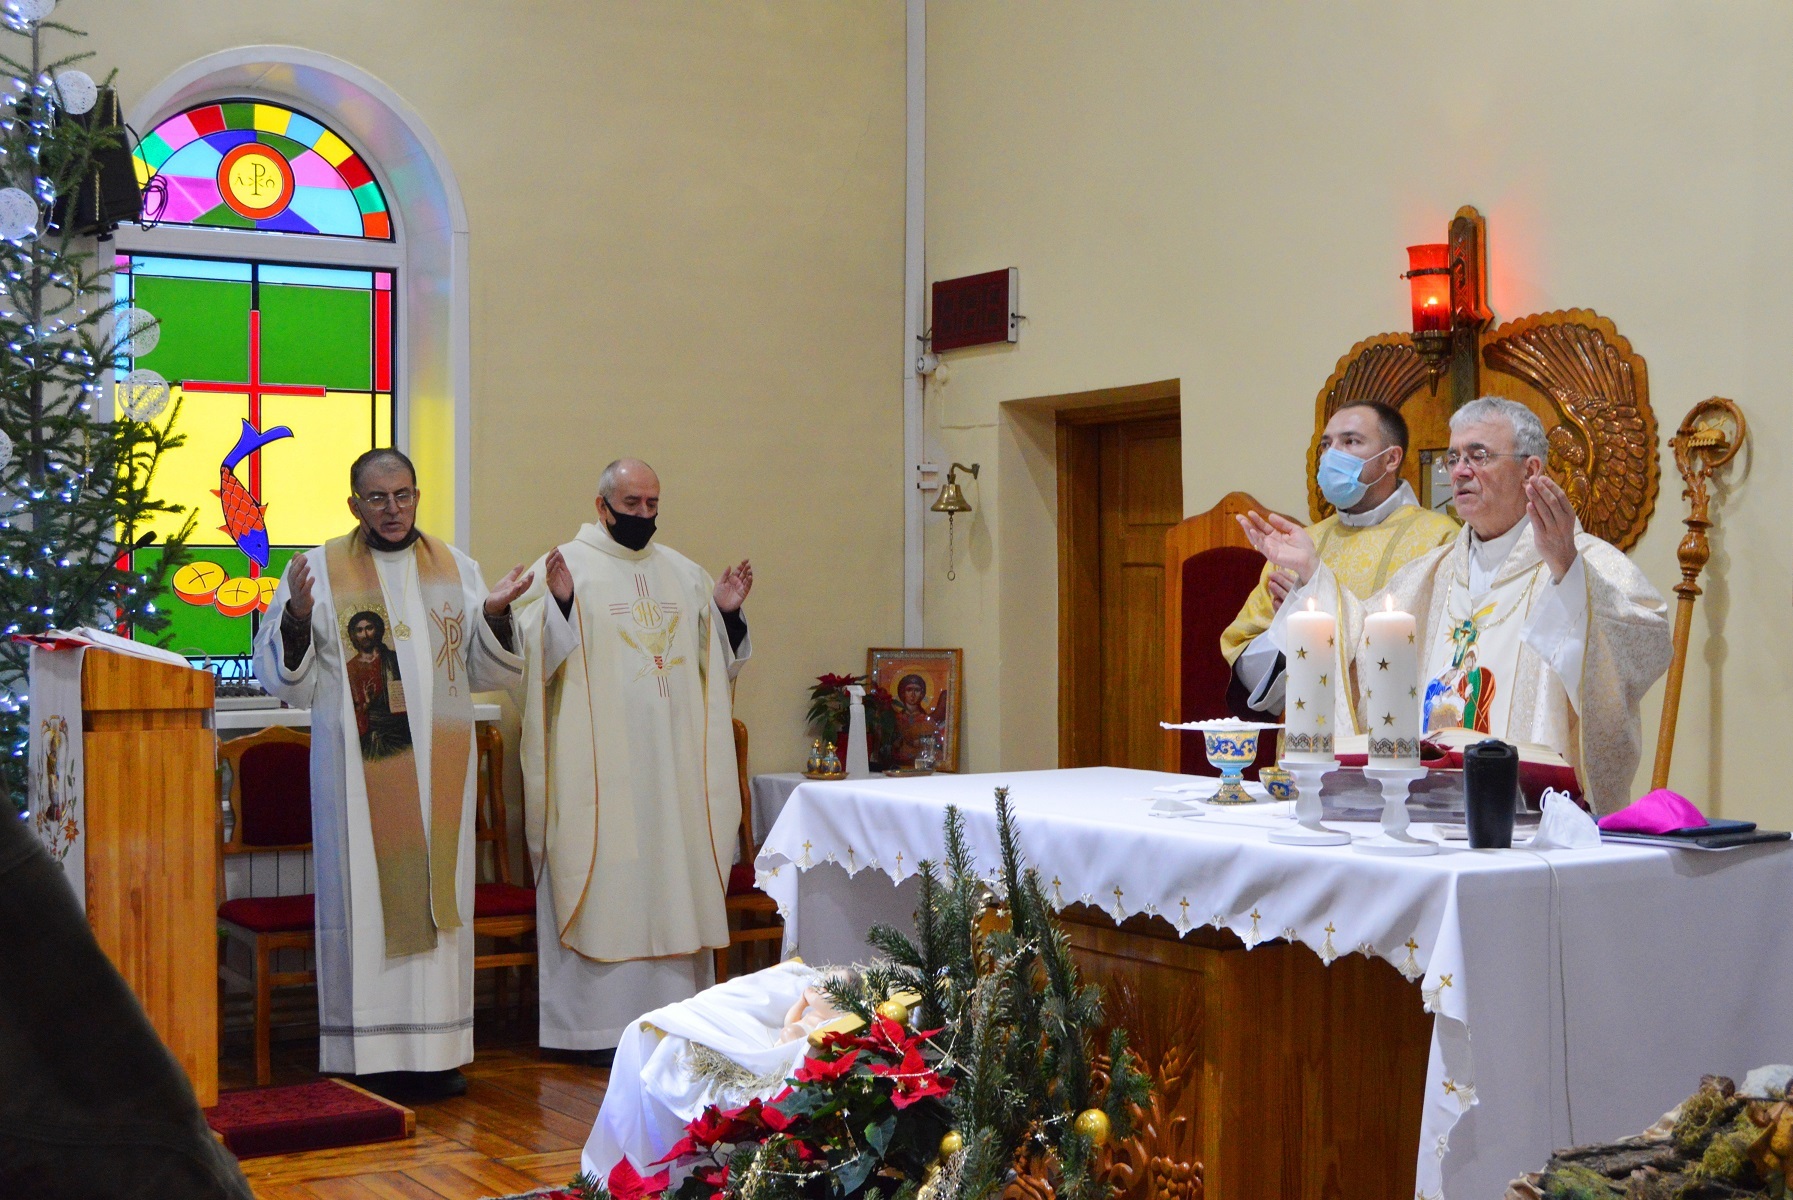 Рождество Христово и юбилей священства отца Коррадо Трабукки отпраздновали в приходе новосибирских францисканцев